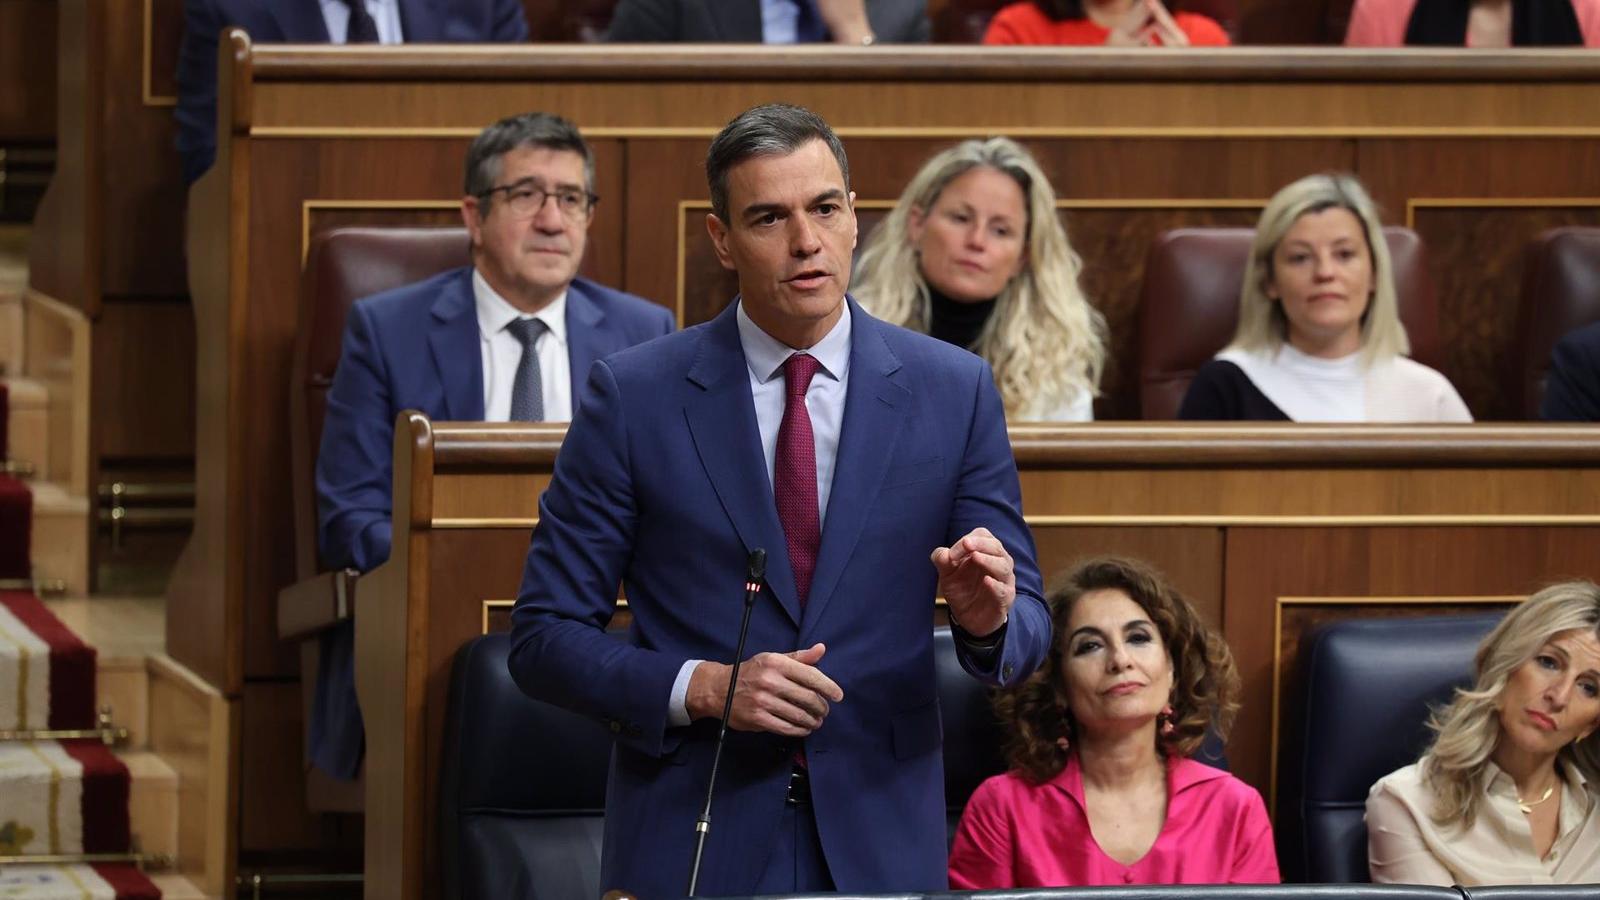 Pedro Sánchez defiende la independencia judicial tras la investigación a su esposa